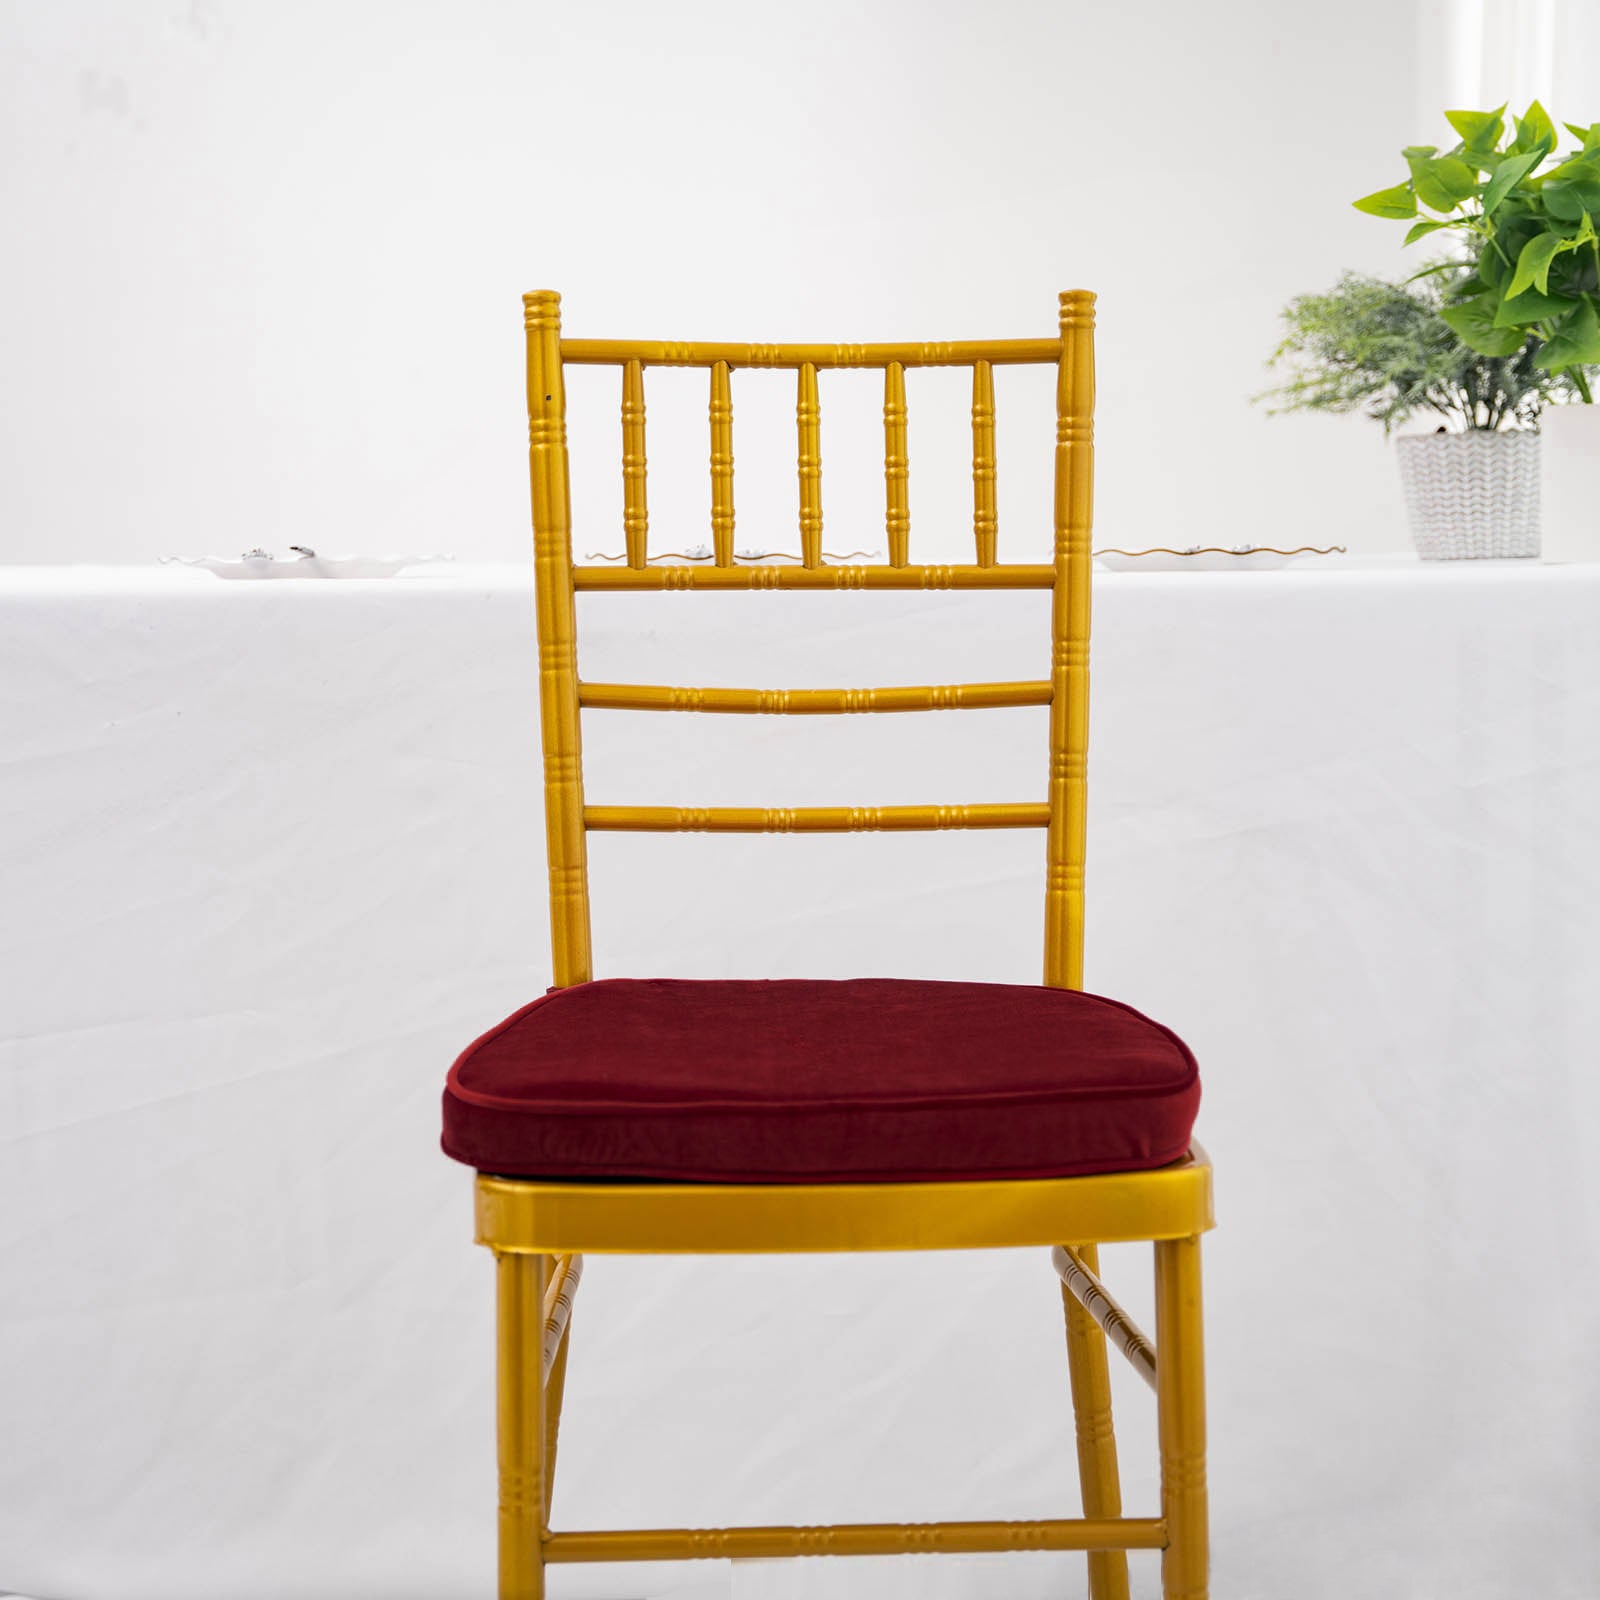 https://tableclothsfactory.com/cdn/shop/products/Thick-Burgundy-Velvet-Chiavari-Chair-Pad.jpg?v=1689407563